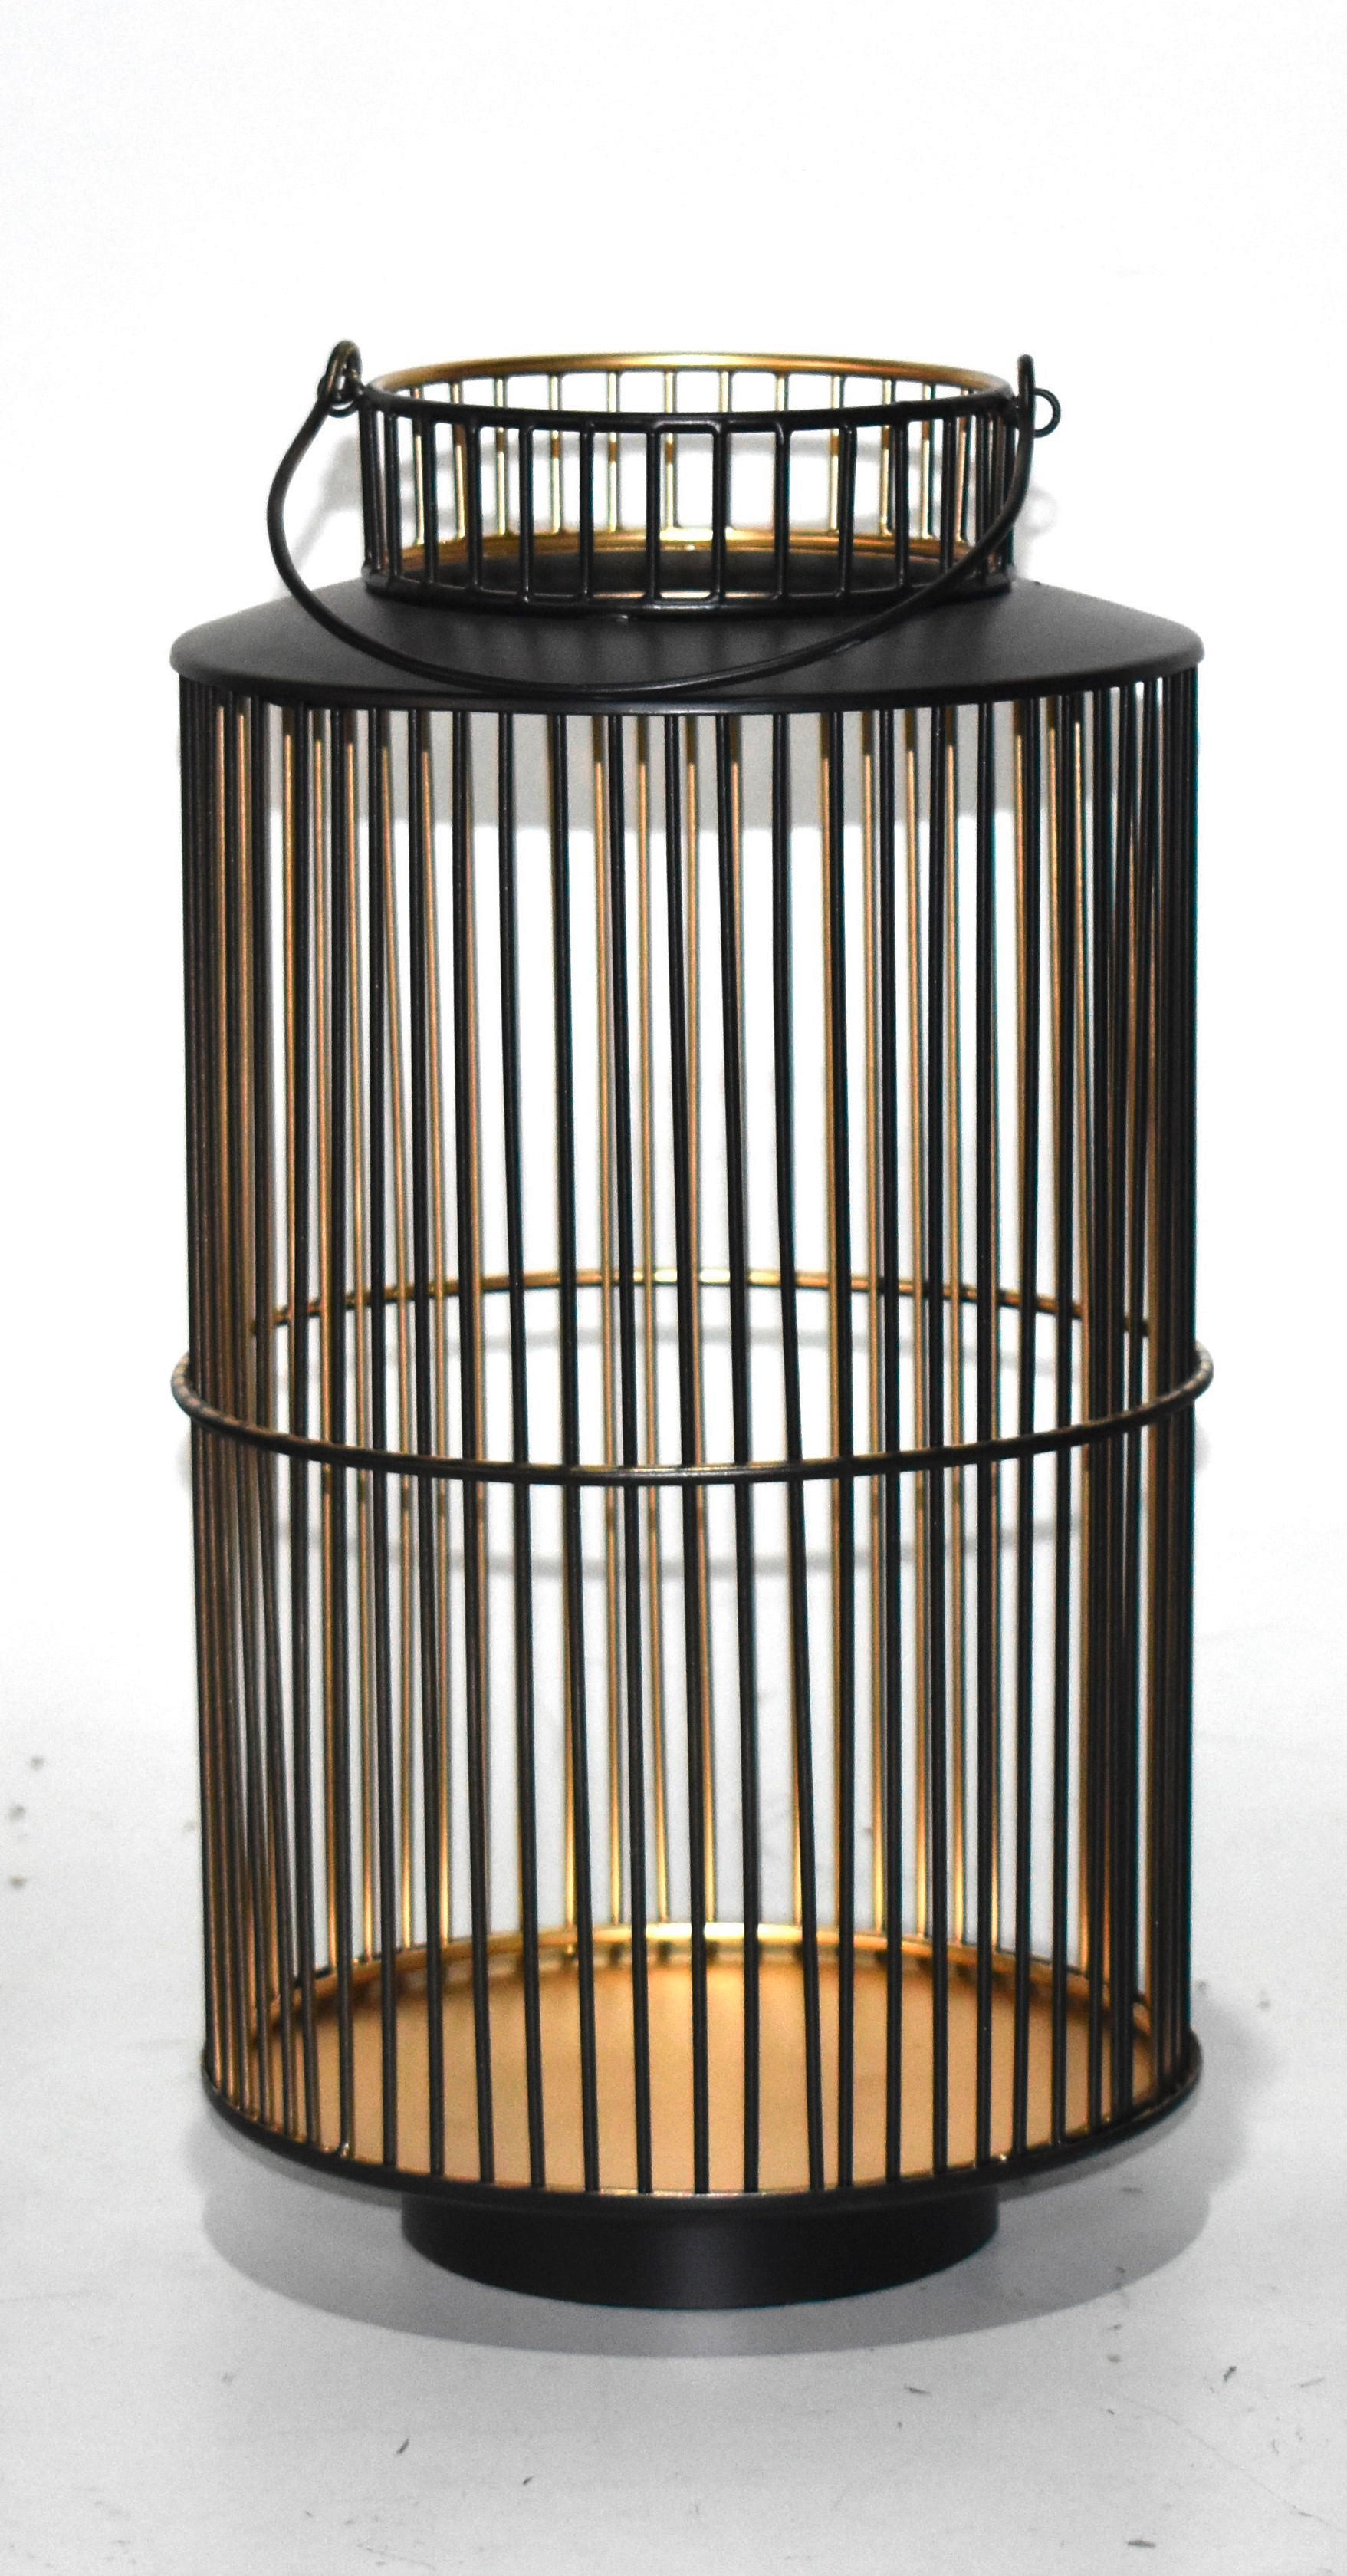 LAMPÁŠ kov - čierna/zlatá, Design, kov (20/40cm) - Ambia Home